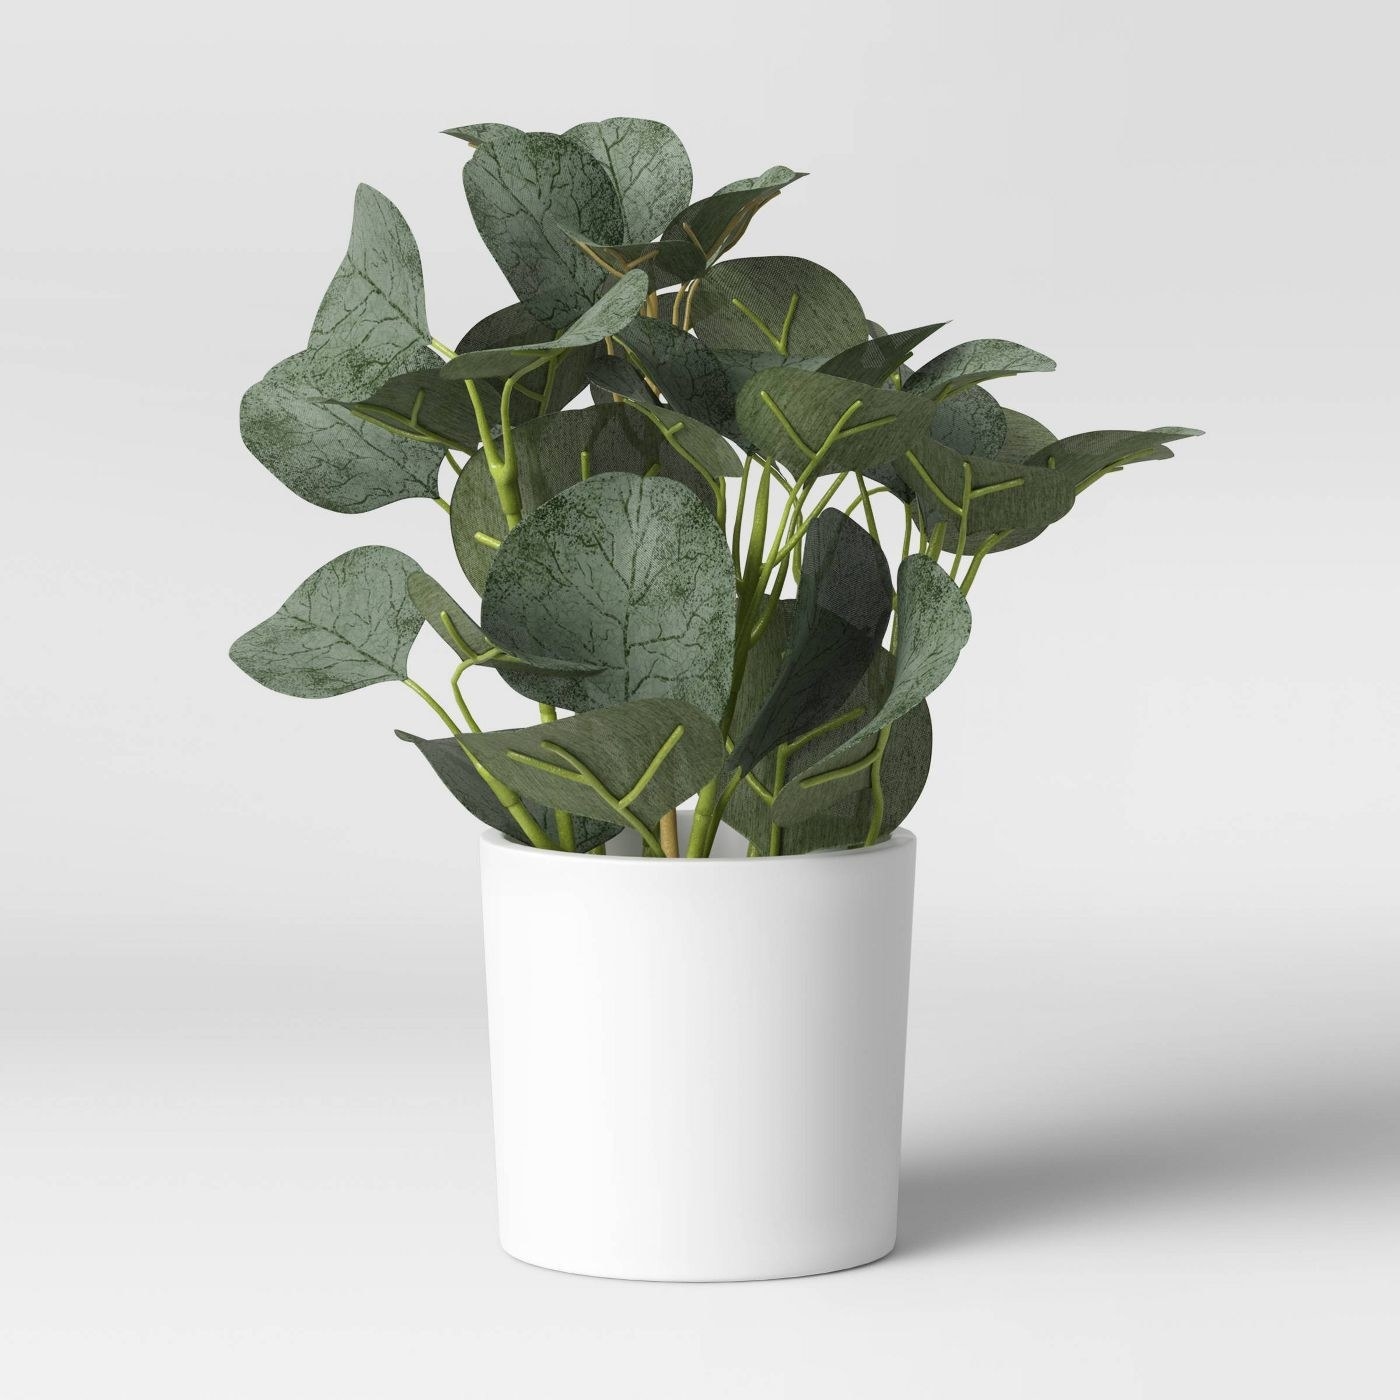 An artificial eucalyptus plant in a white pot